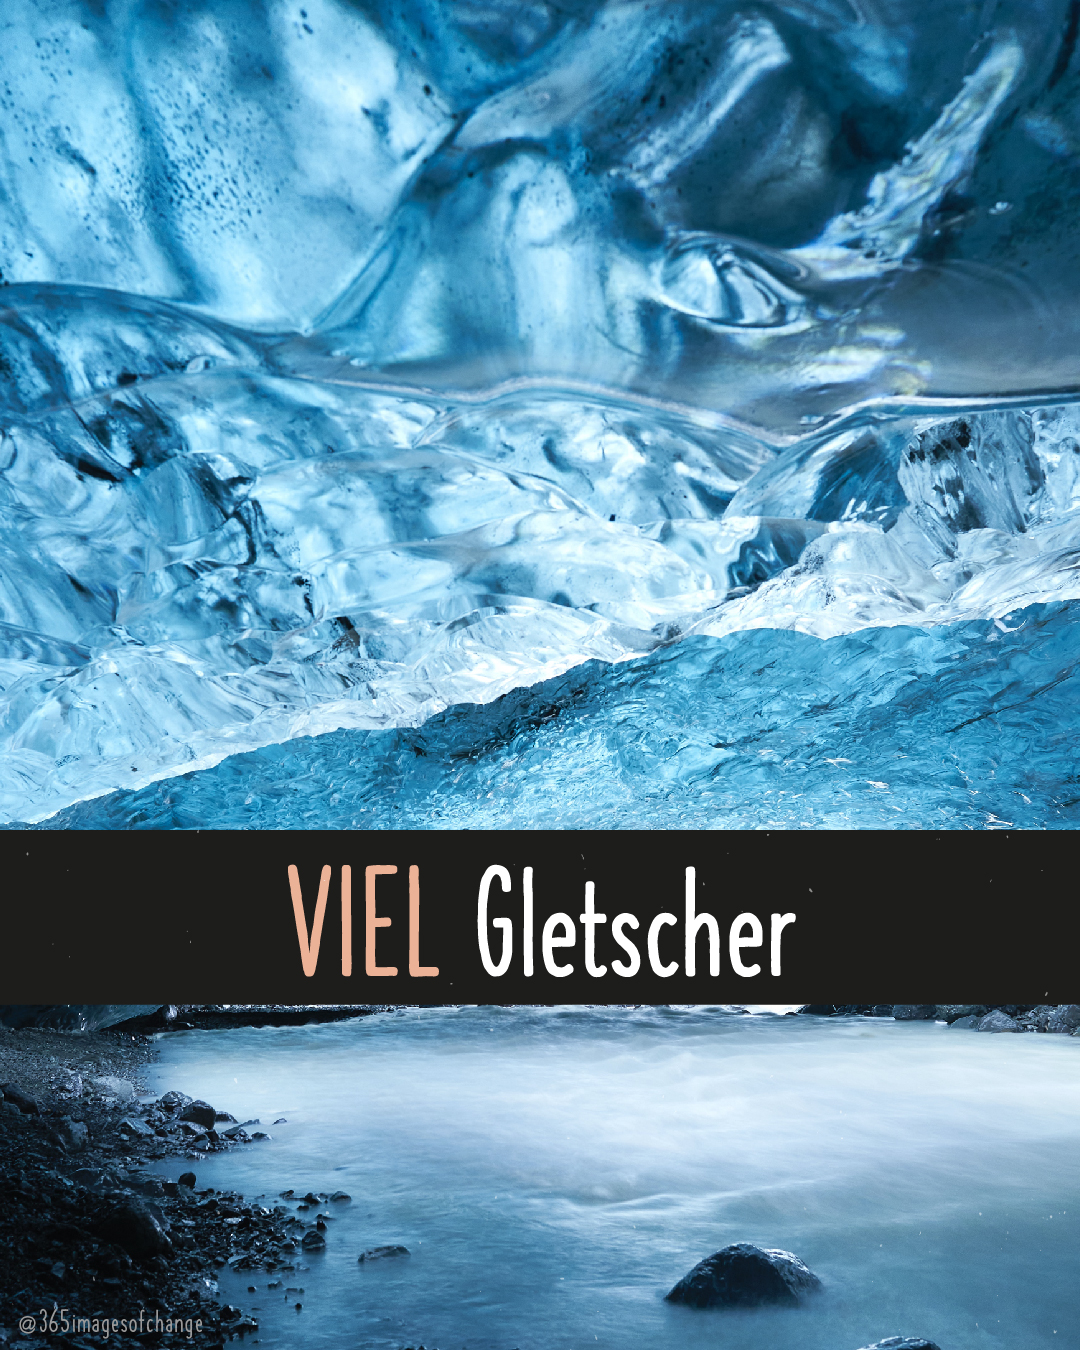 Vollbild von Eis aus Gletscher. Text darunter: Viel Gletscher